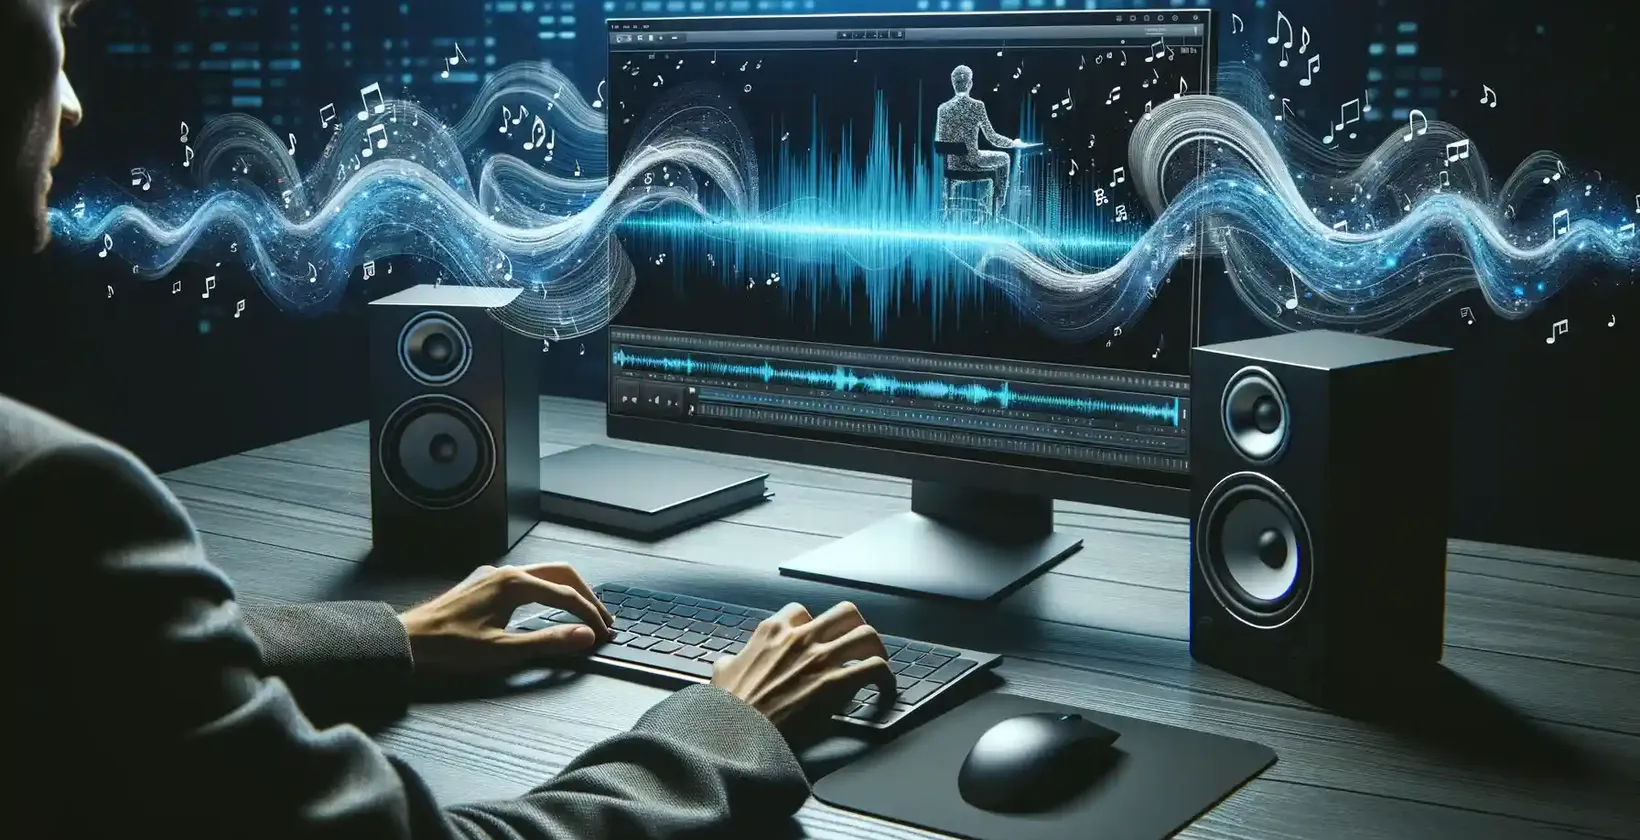 Một không gian làm việc hiện đại được chiếu sáng bởi giao diện kỹ thuật số, giới thiệu một người đàn ông mải mê chỉnh sửa âm thanh.